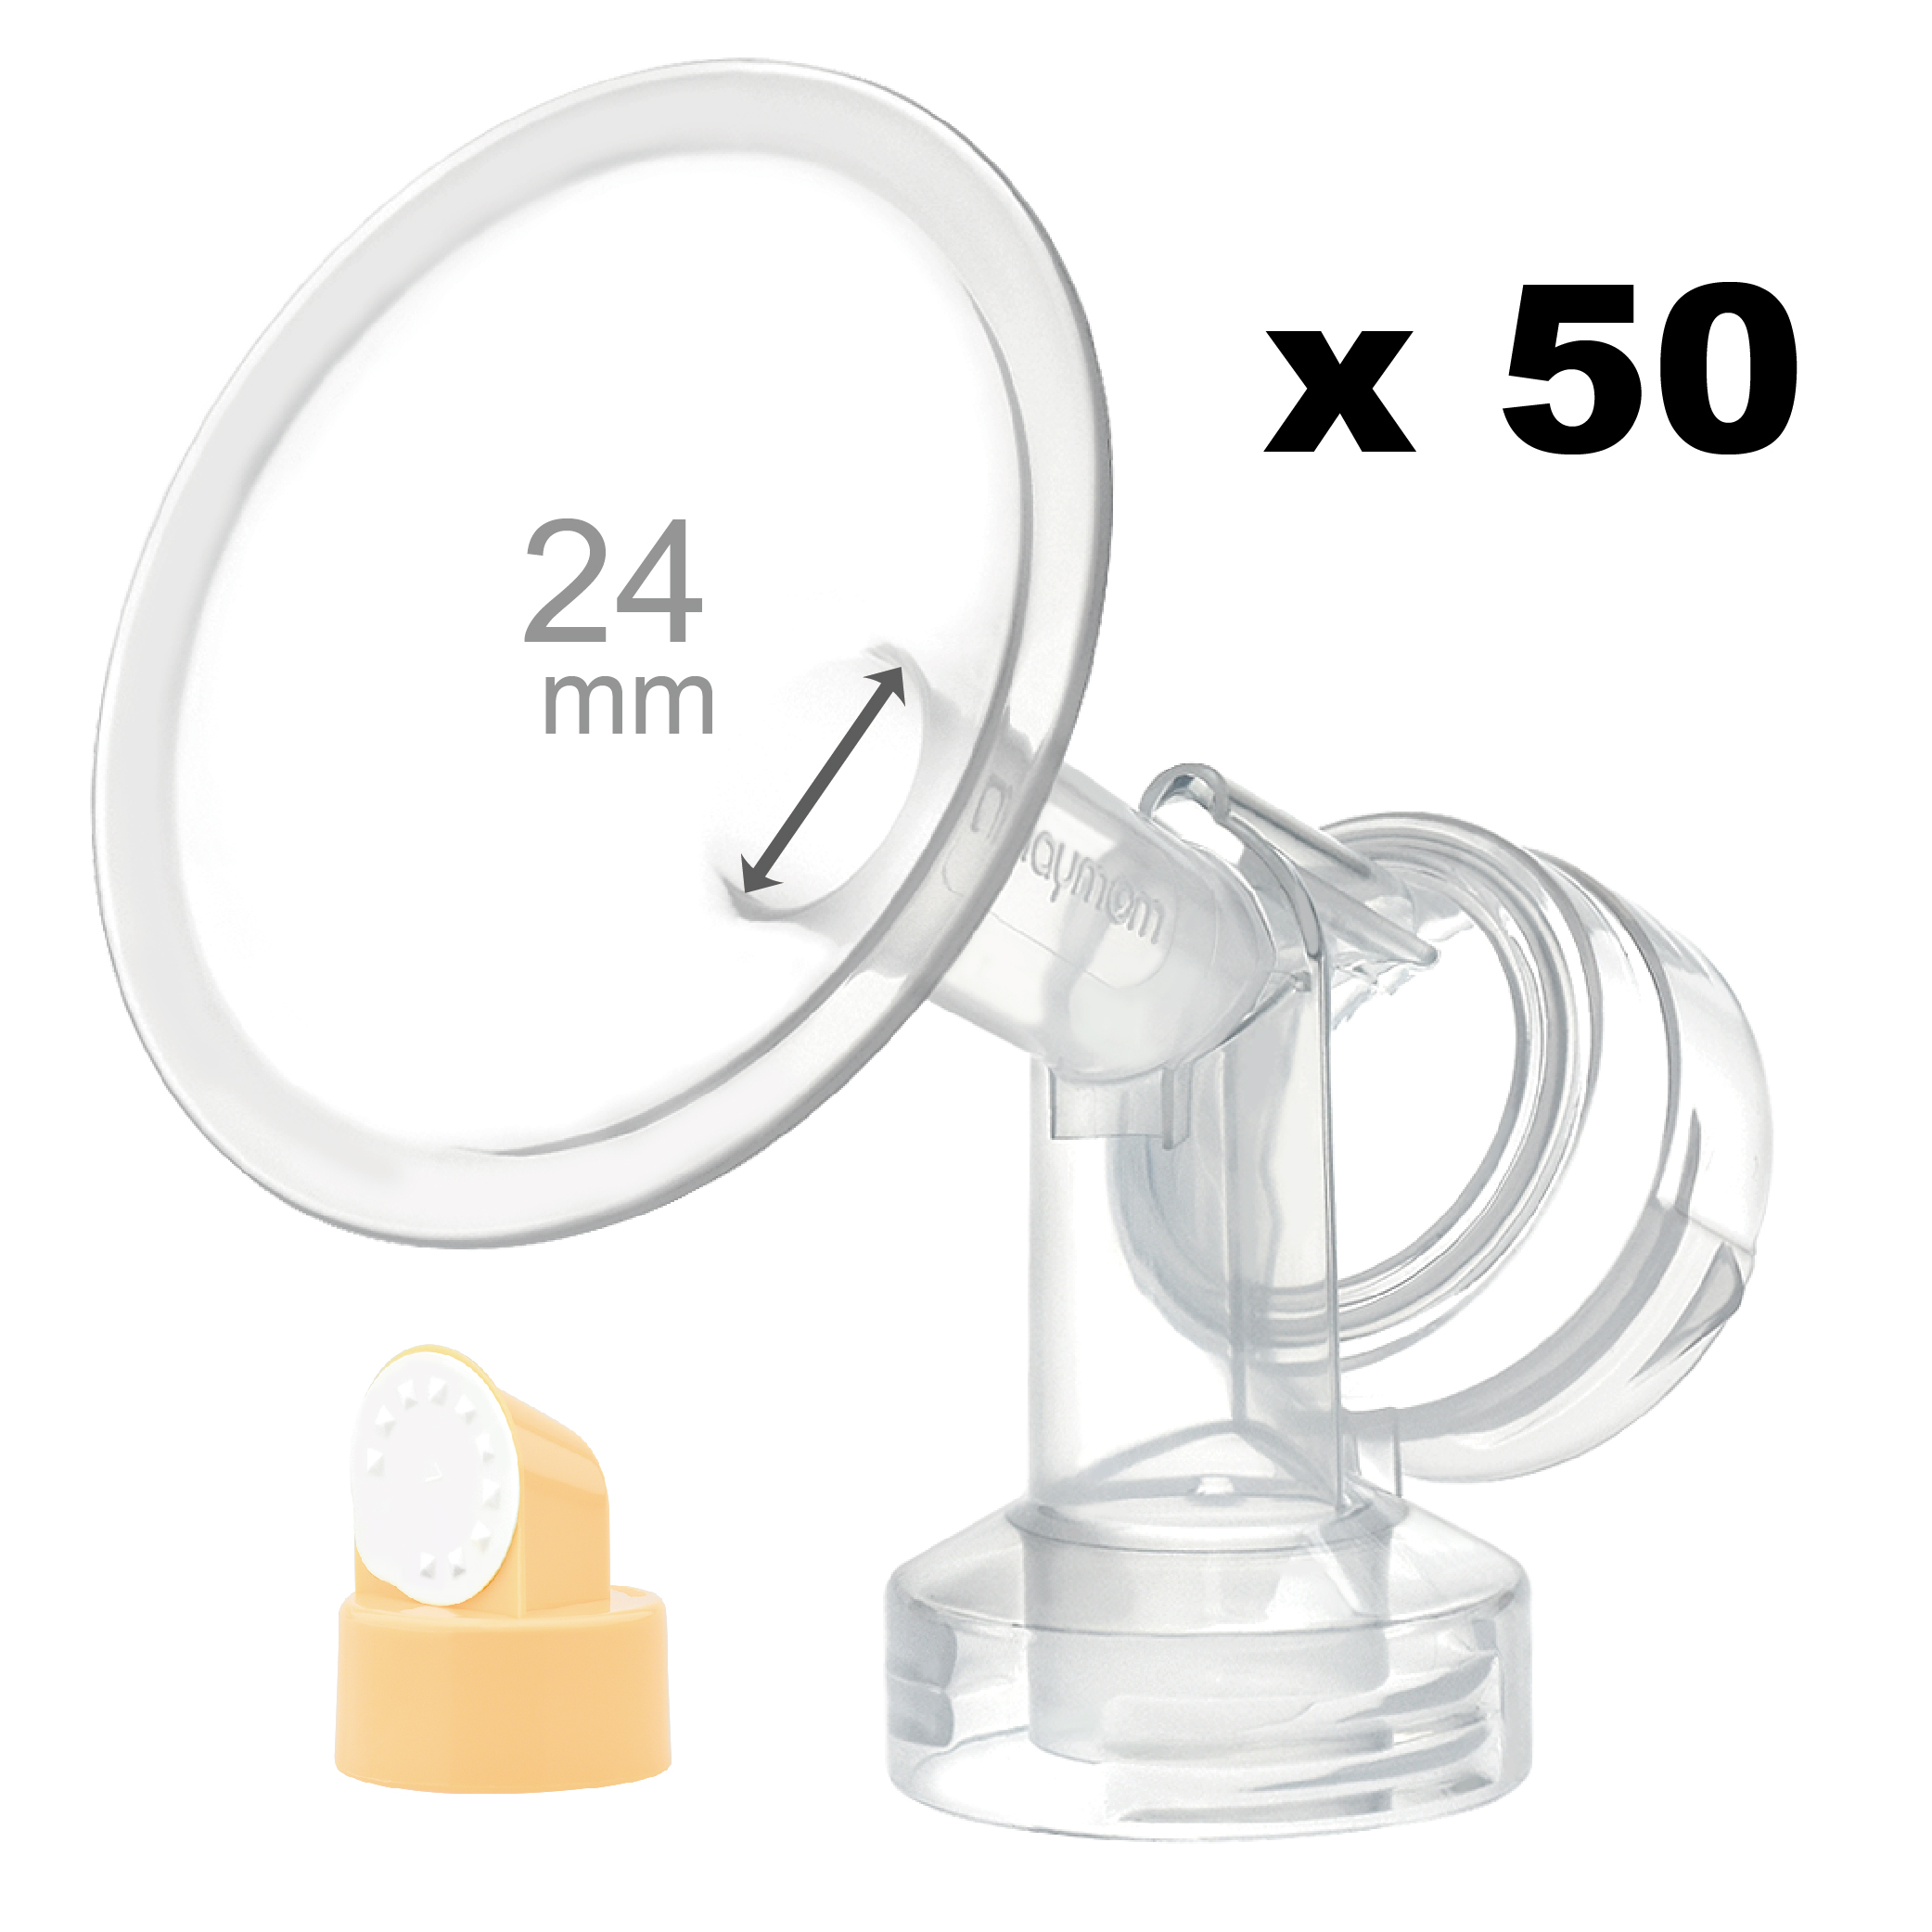 Breastshield (flange) with valve/membrane for Medela, 24 mm, 50 pc; Narrow (Standard) Bottle Neck